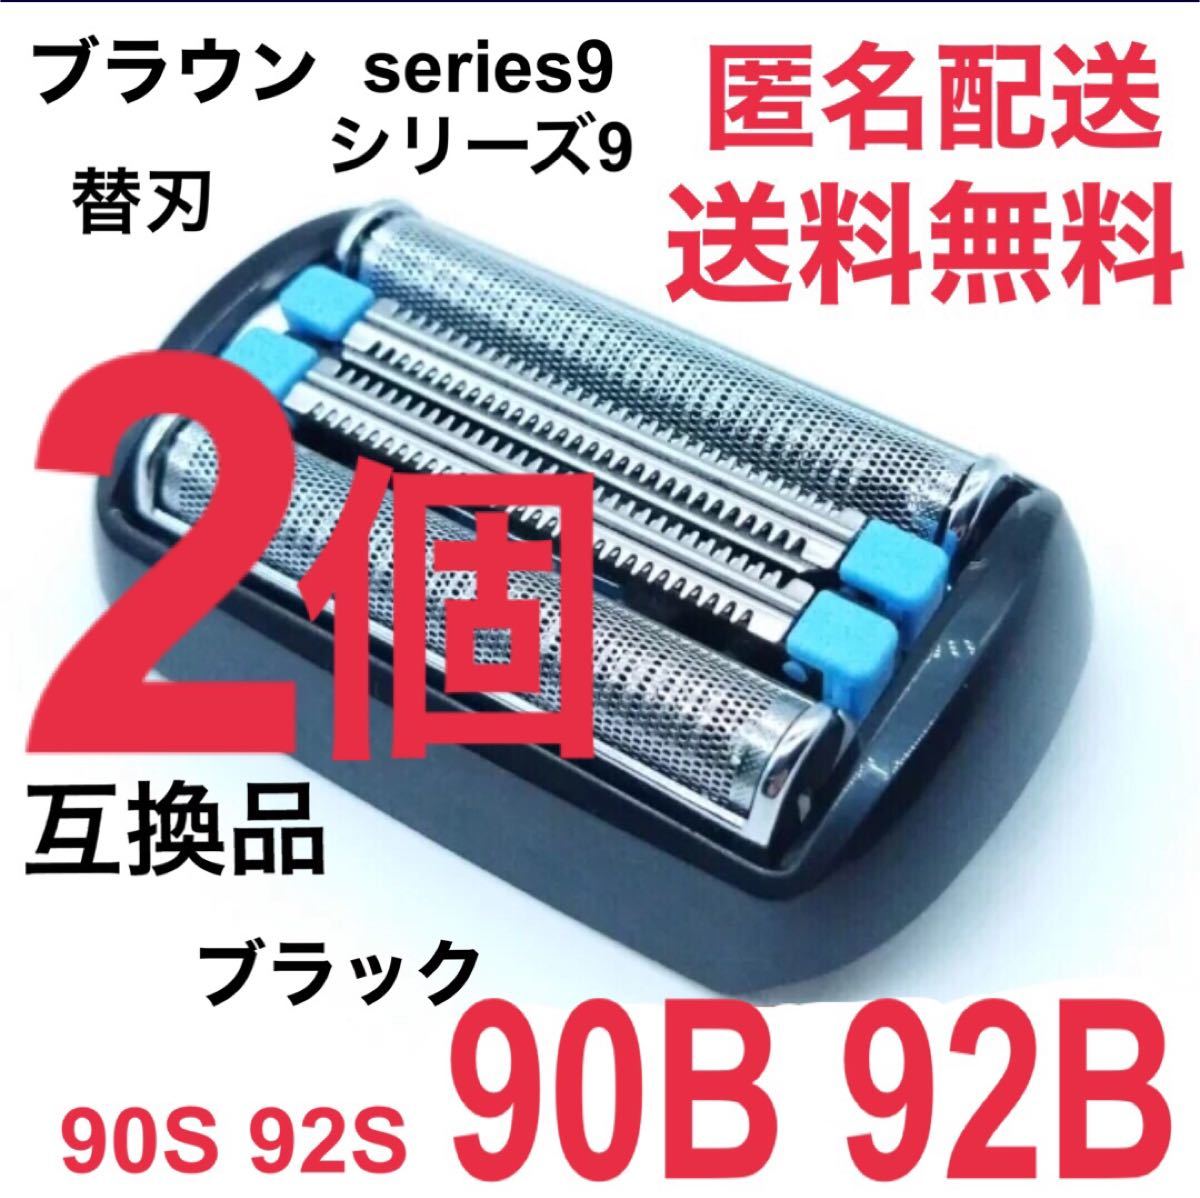 【2個】★ブラウン シリーズ9替刃 互換品 シェーバー 90B 92B